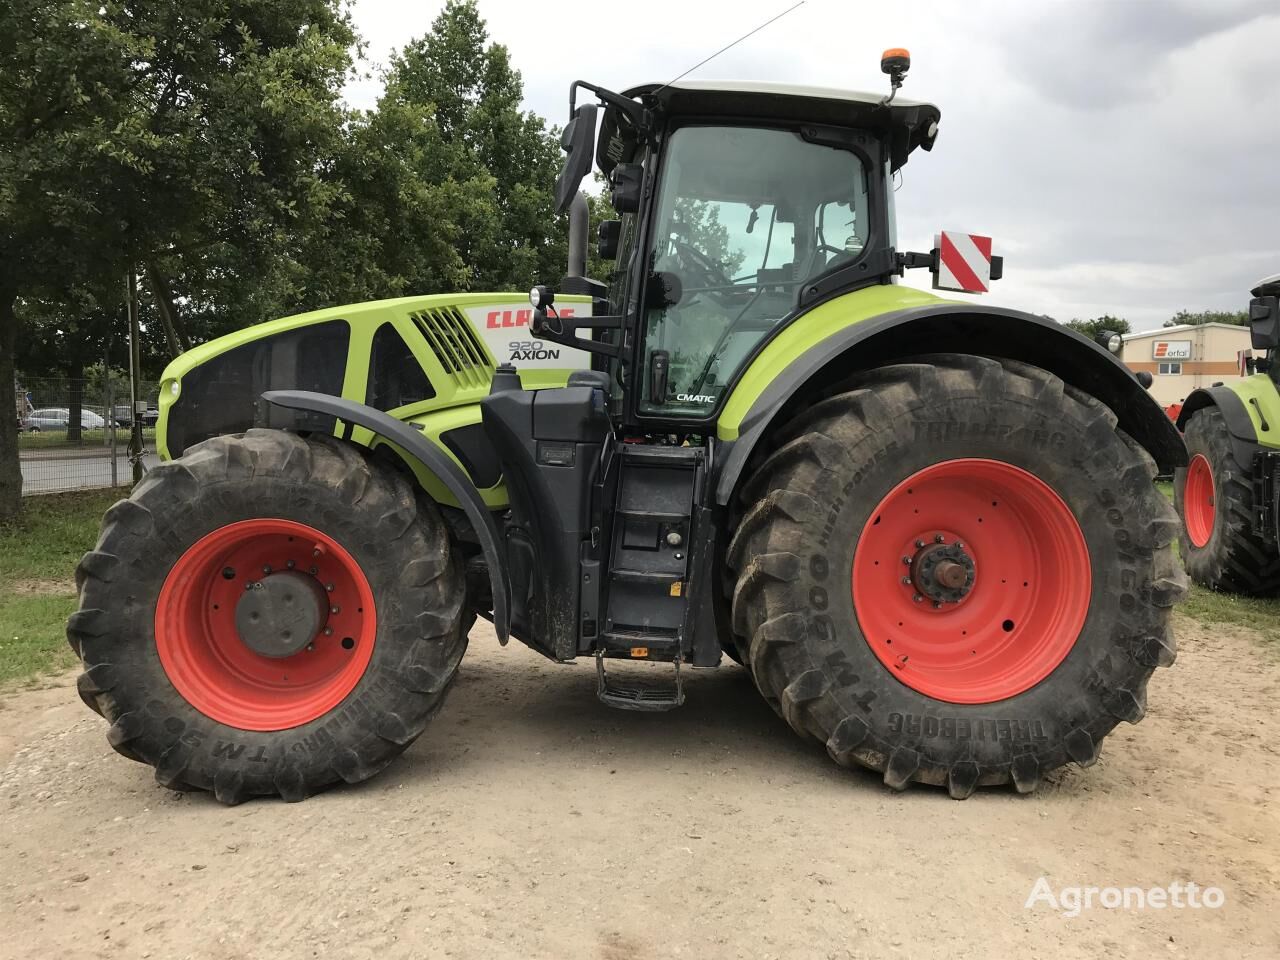 Axion 920 wheel tractor